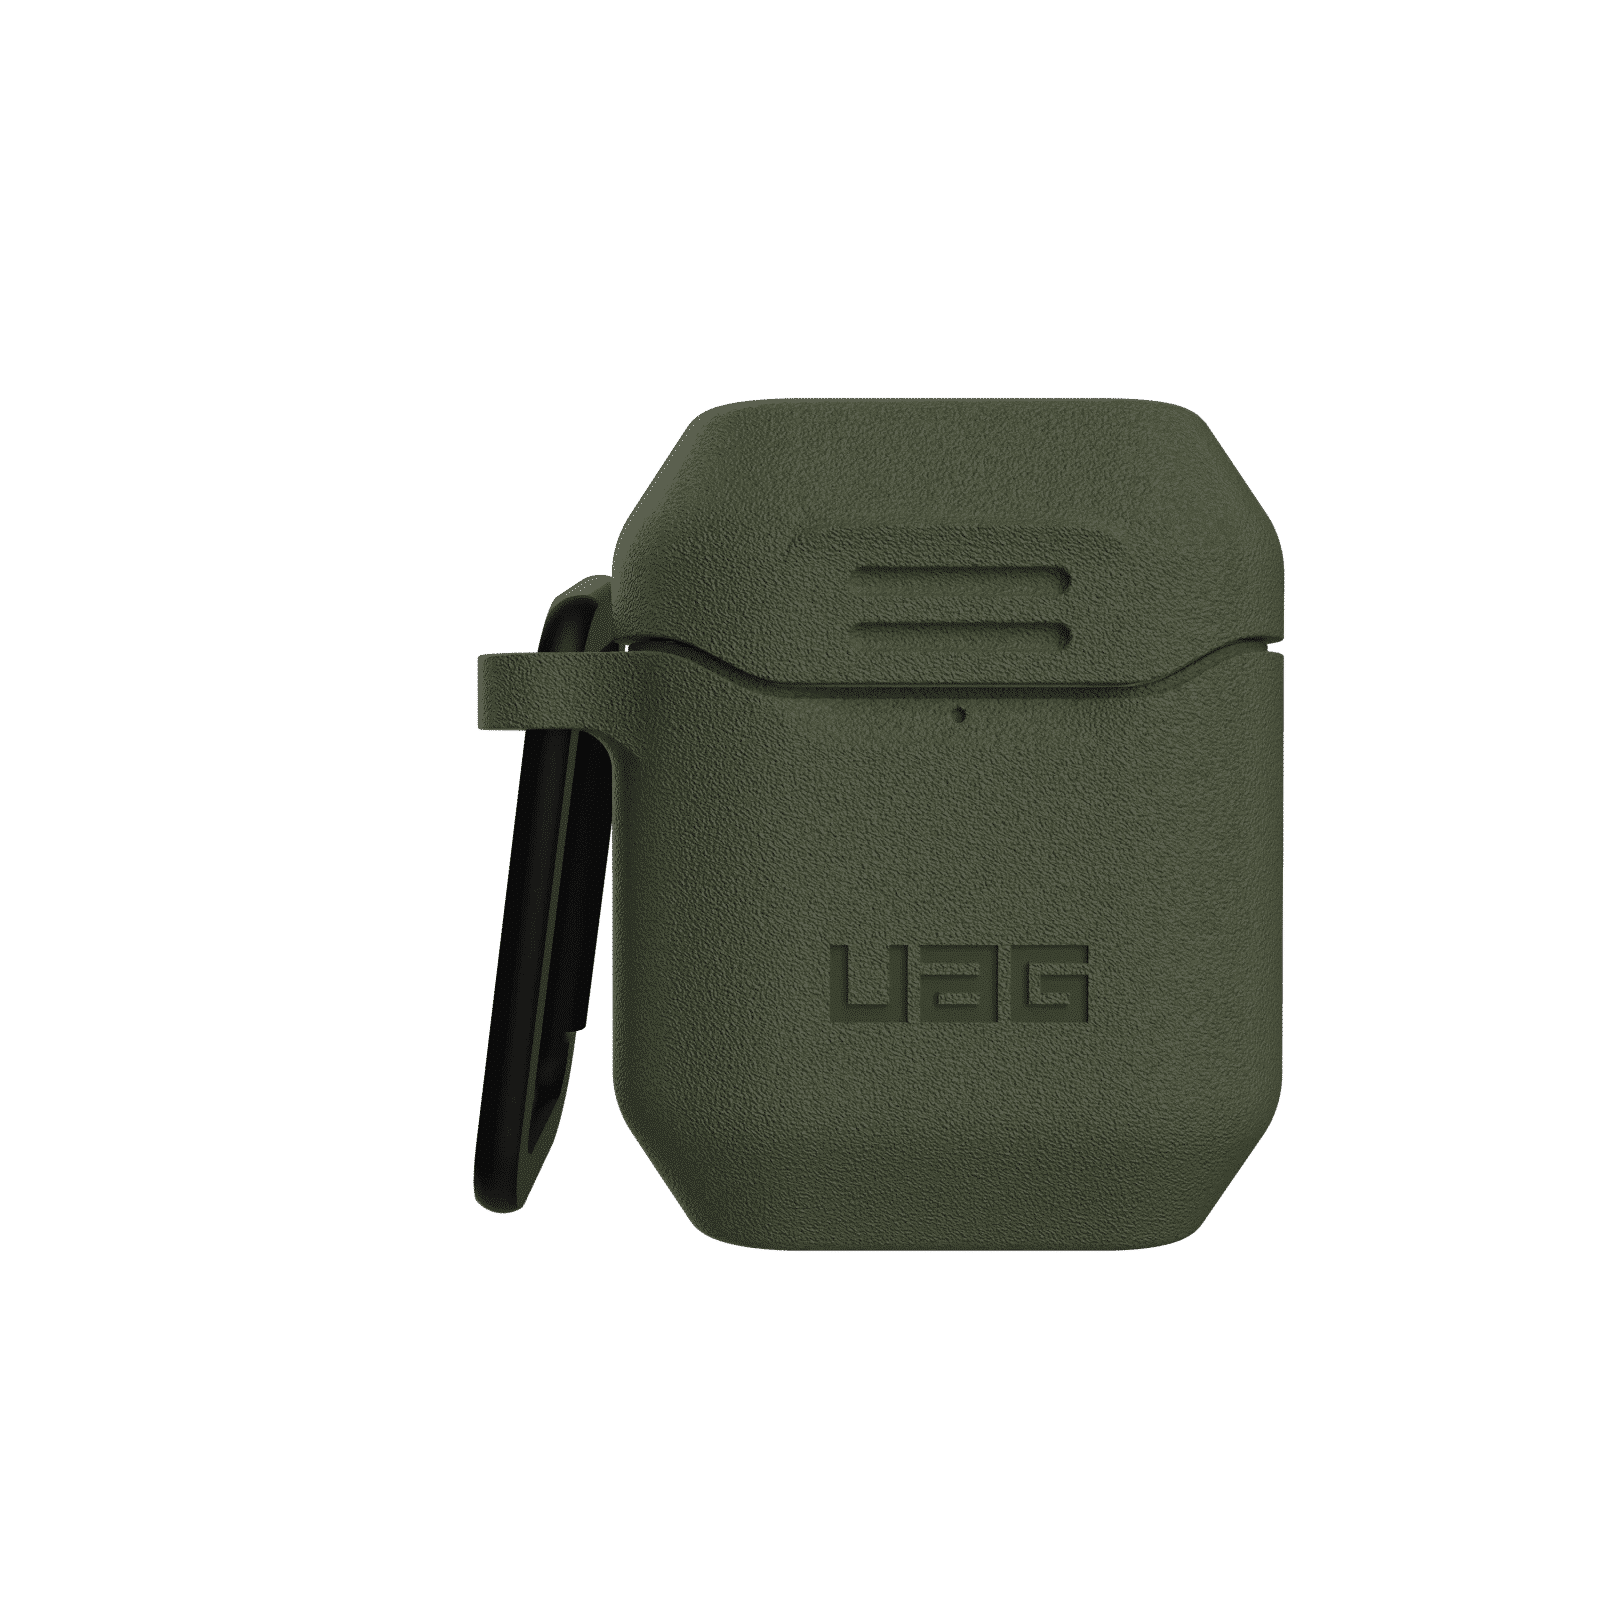 เคส UAG รุ่น Standard Issue Silicone Case - AirPods 1/2 - เขียว